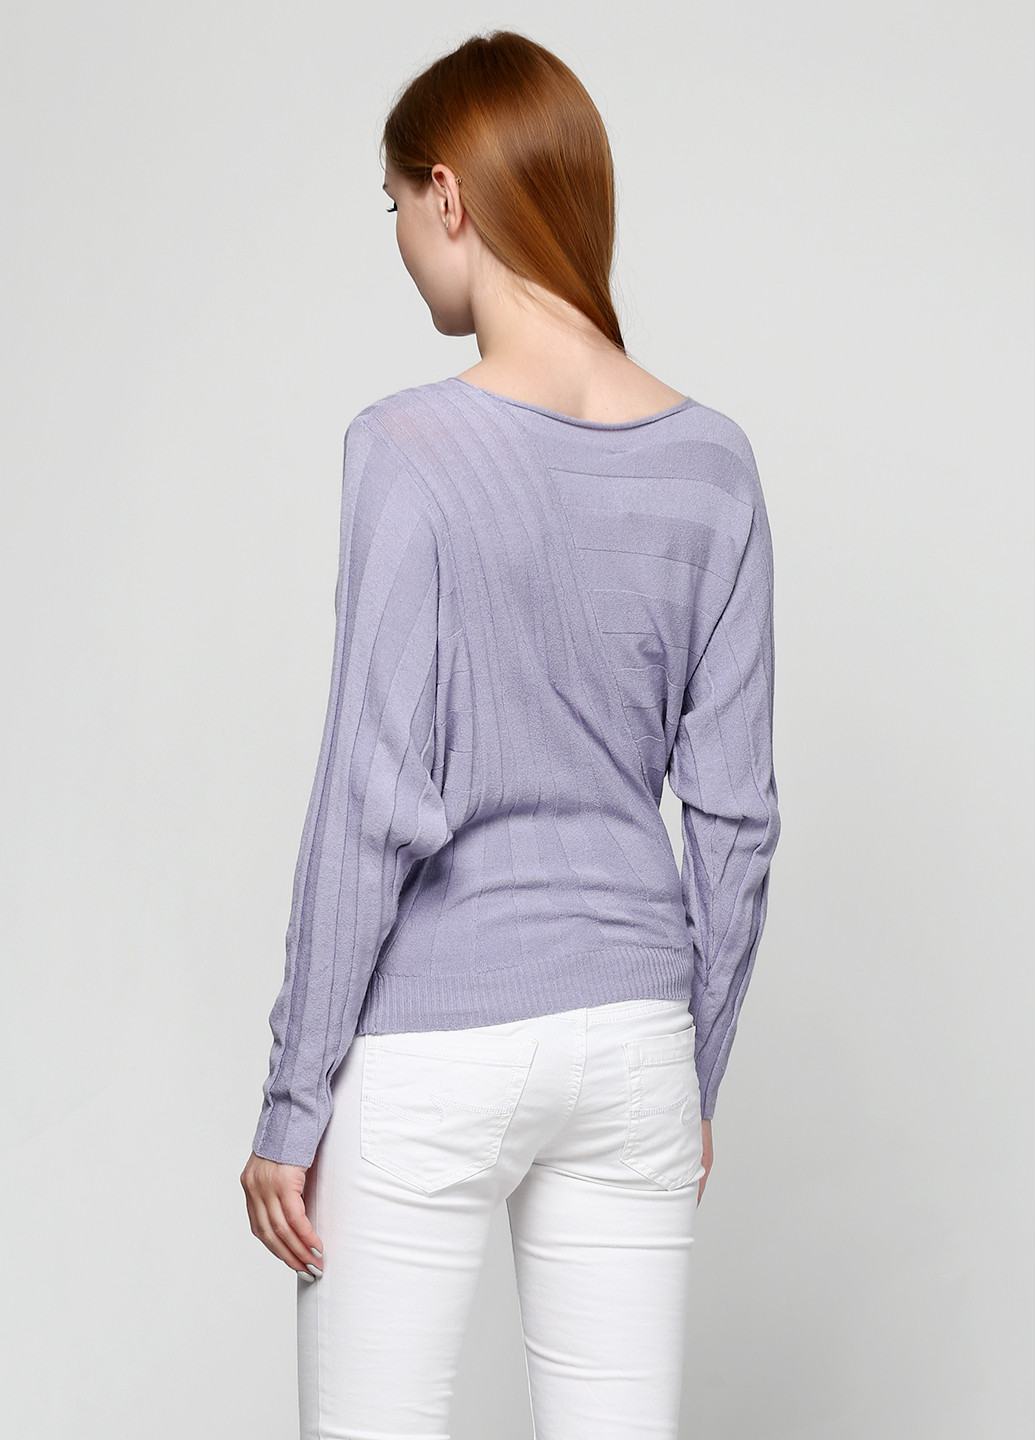 Лавандовый демисезонный пуловер пуловер Oblique